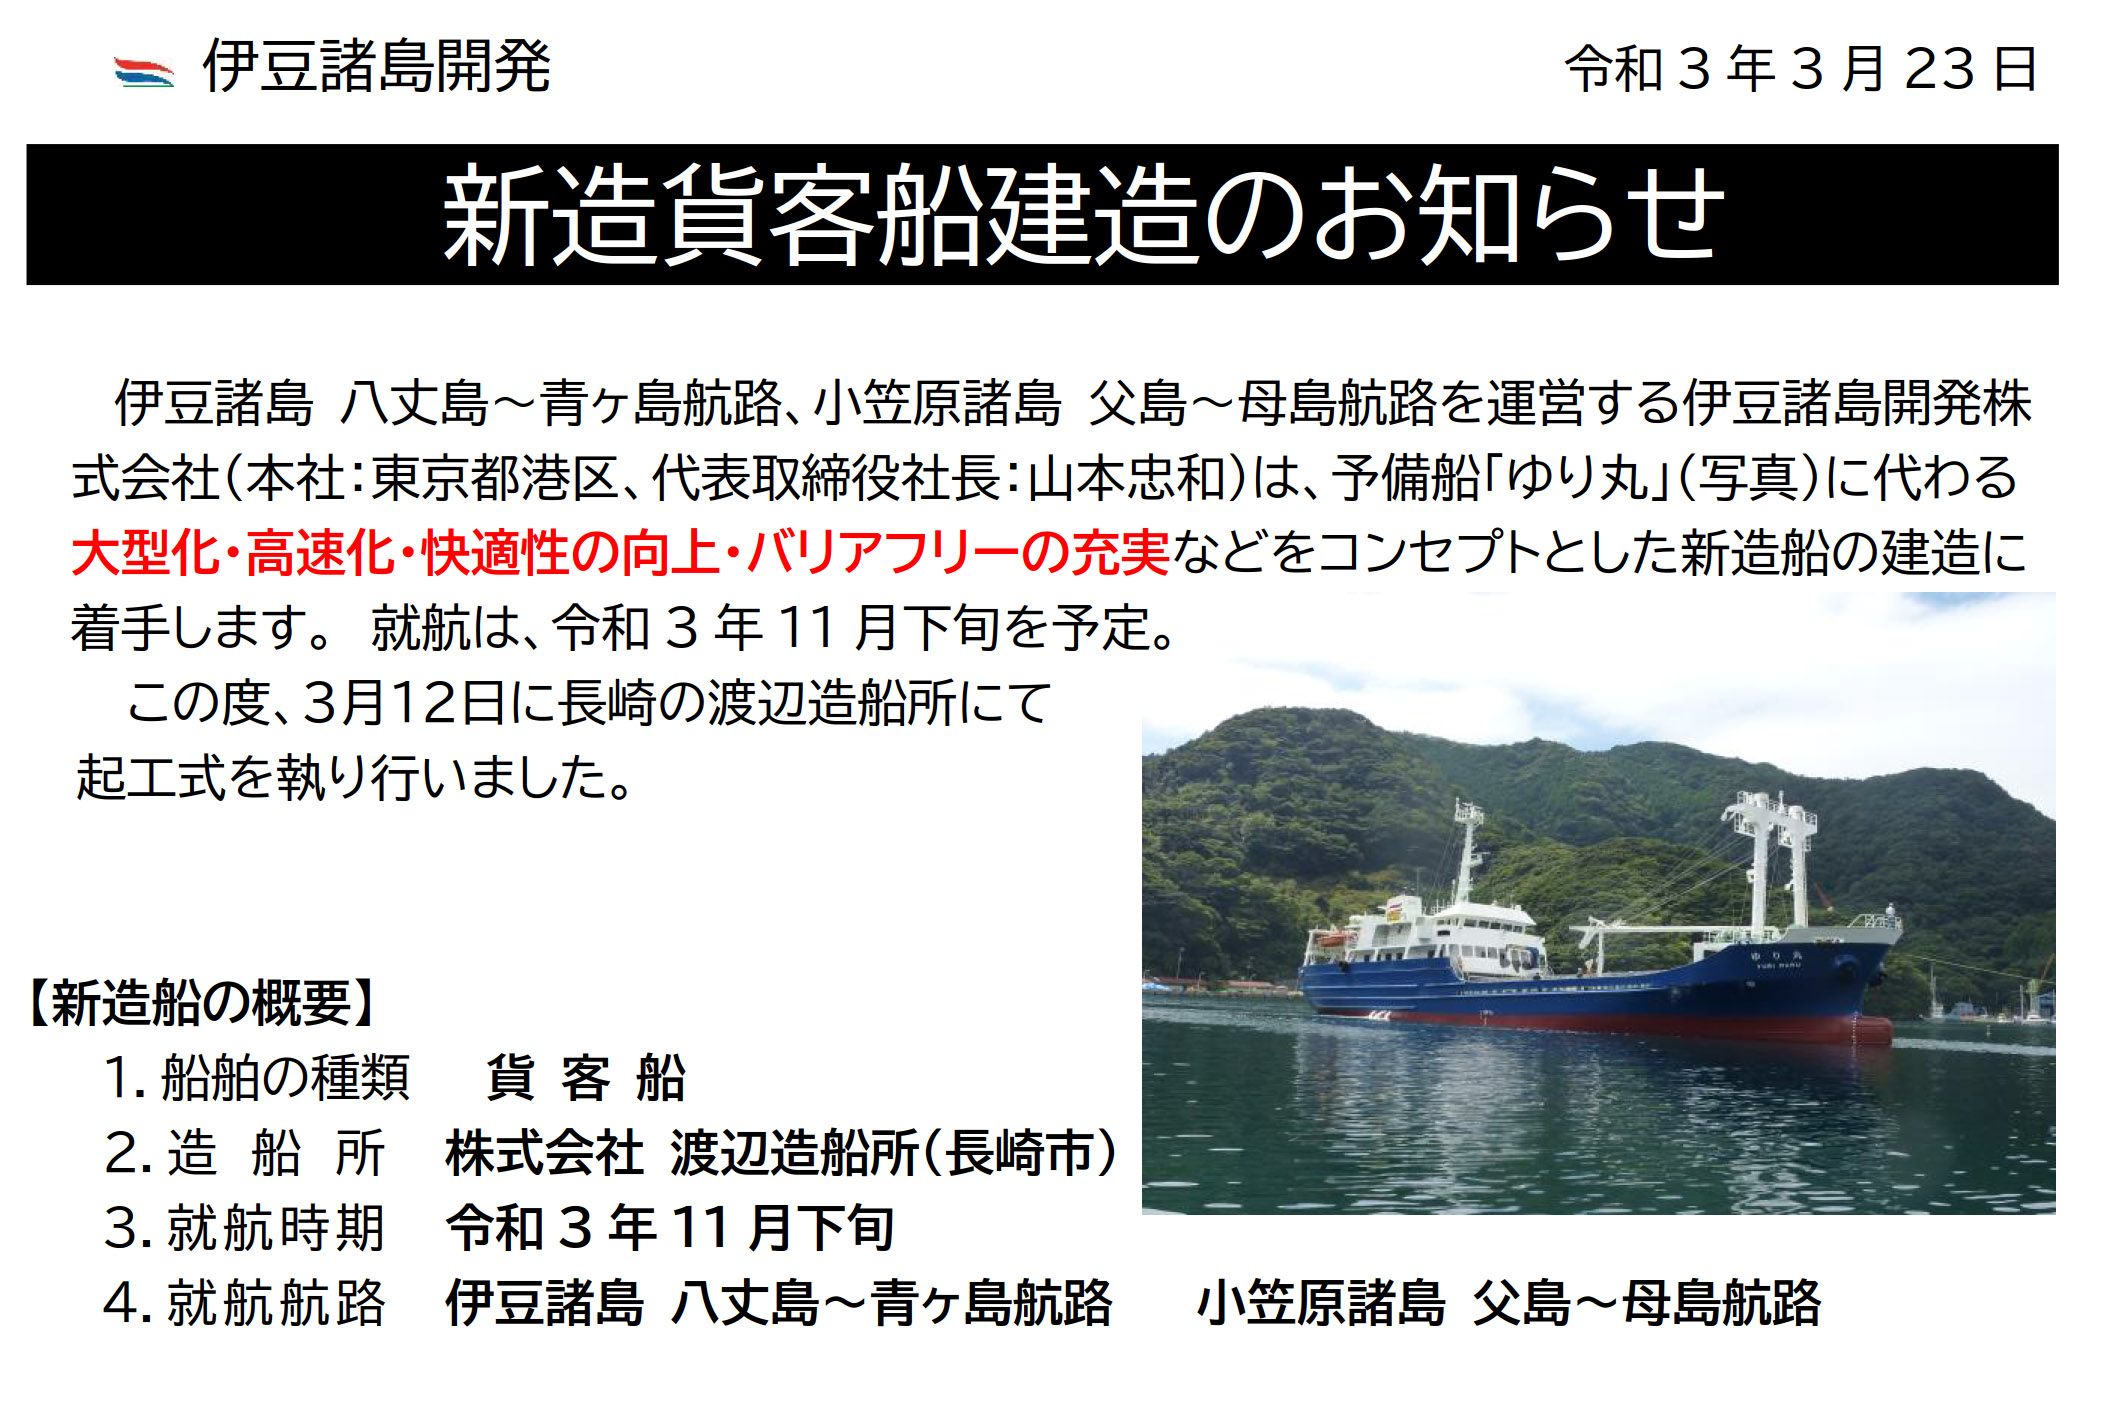 伊豆諸島開発、青ヶ島航路・母島航路に新造船。11月下旬就航予定